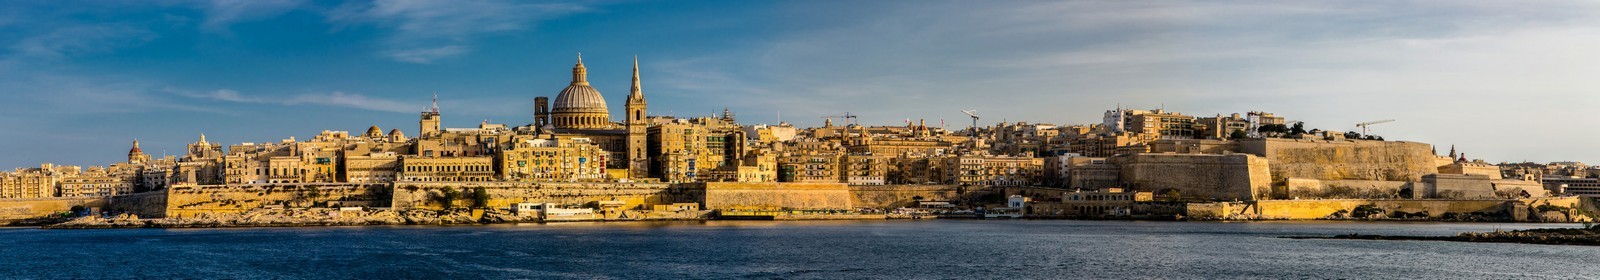 Valletta sea front 4